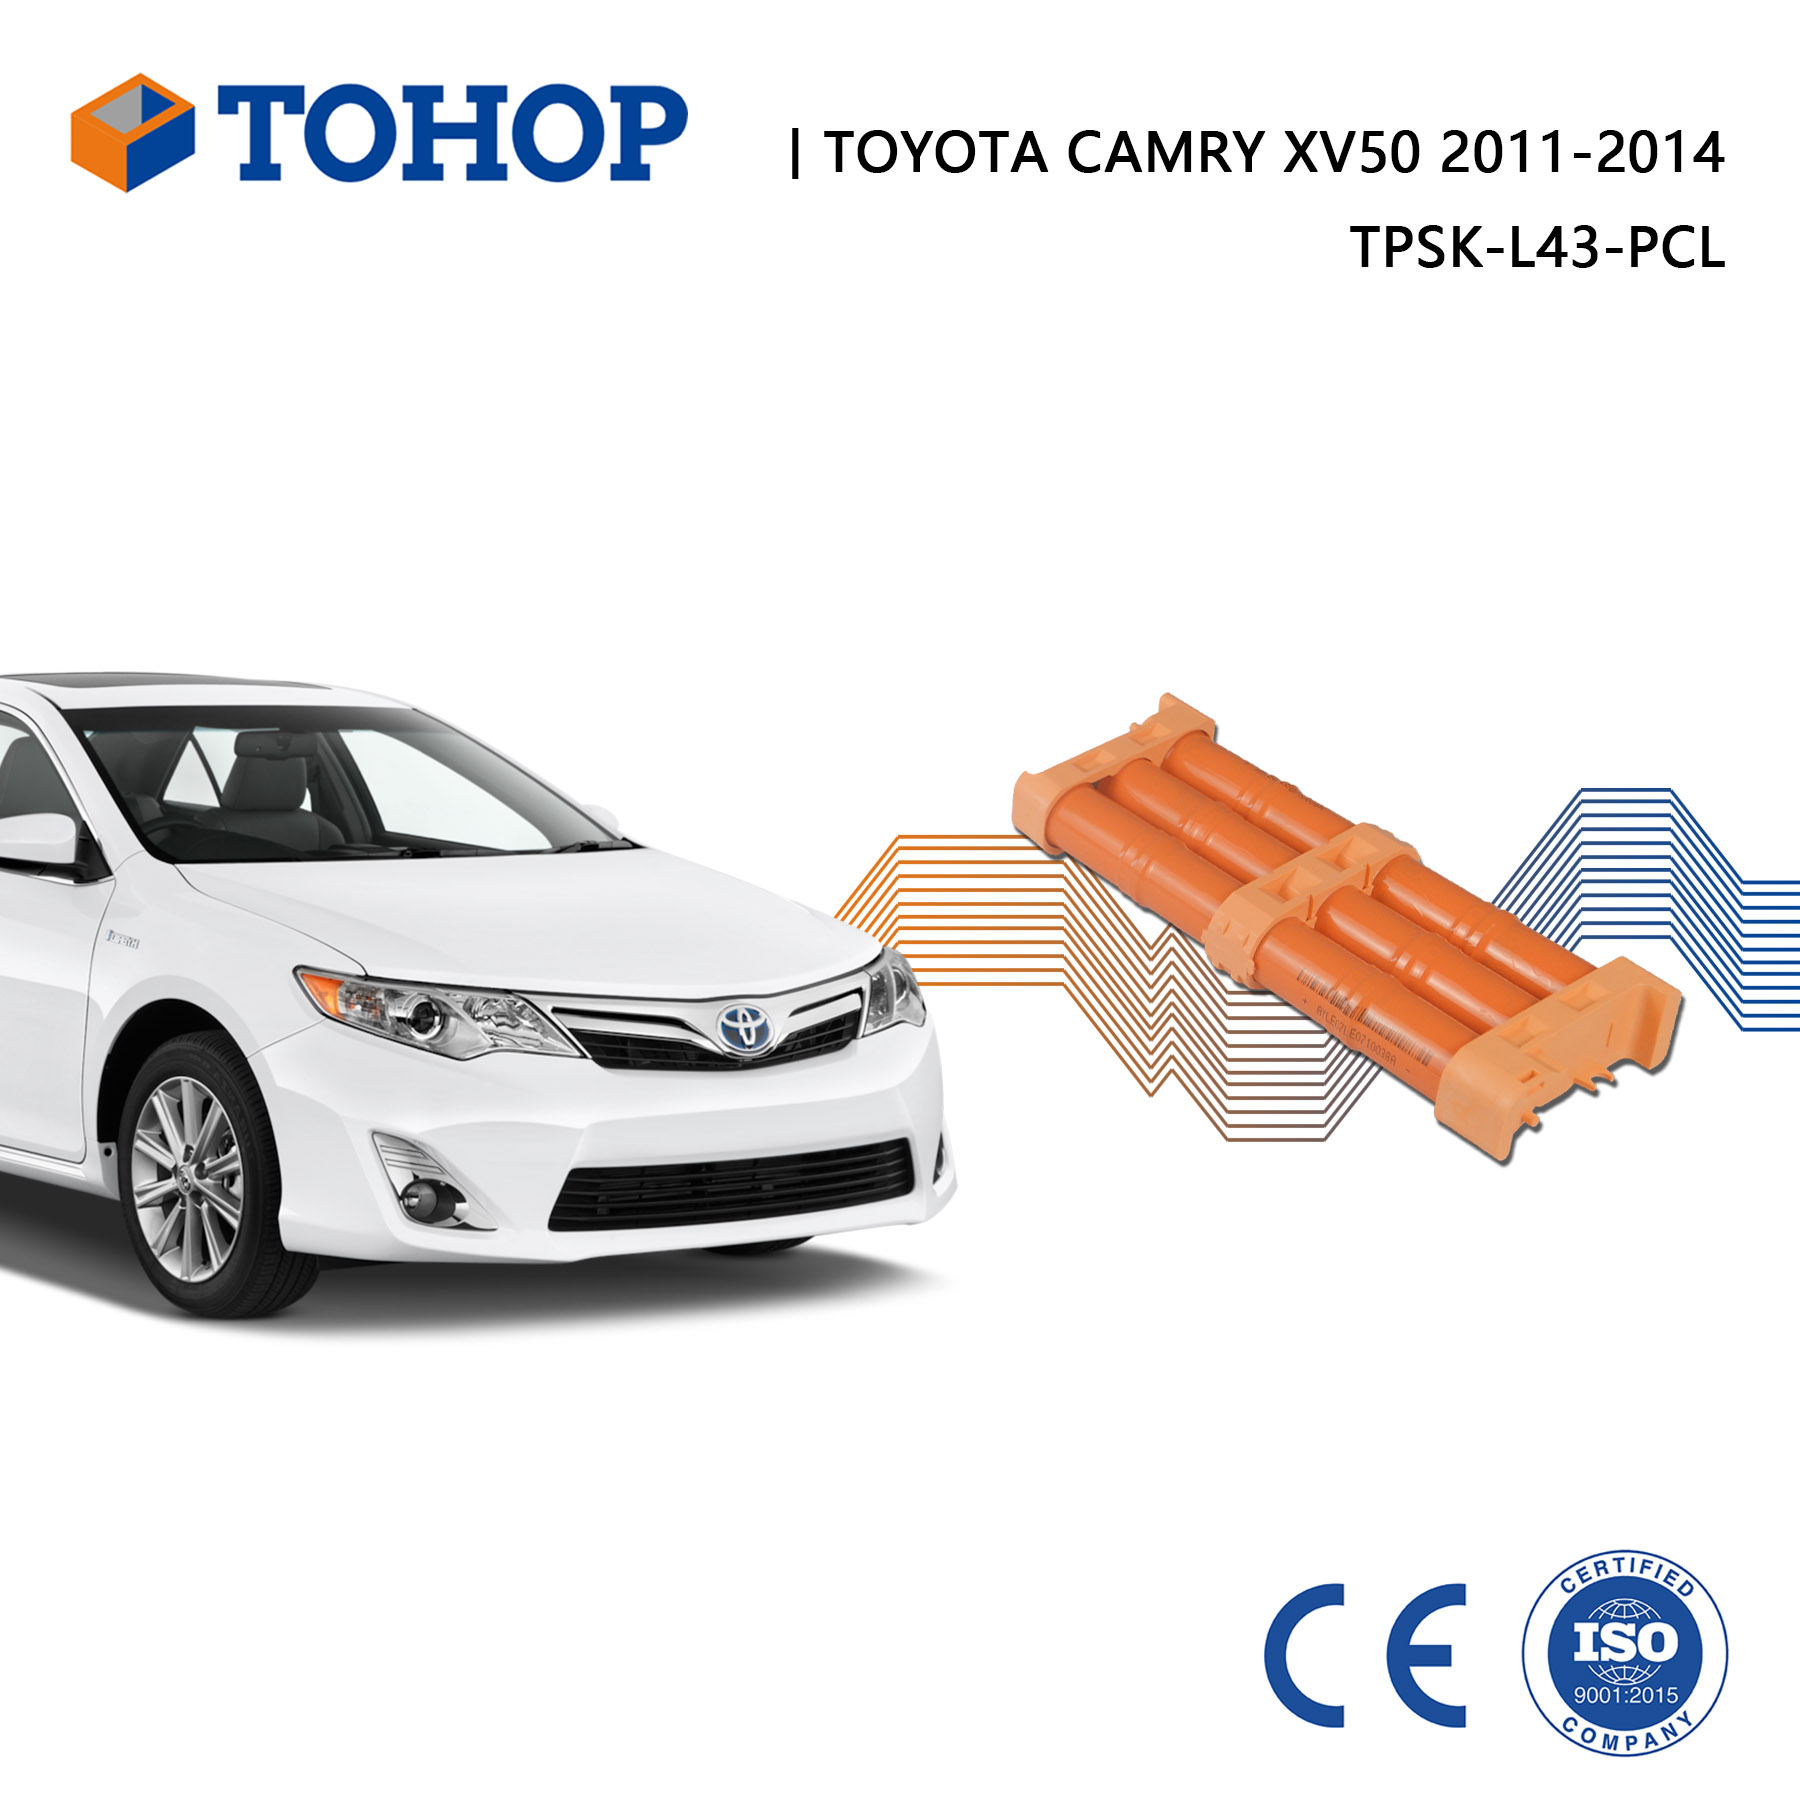 Celdas de batería nuevas para el reemplazo de batería híbrida Toyota Camry 2012 - 2016